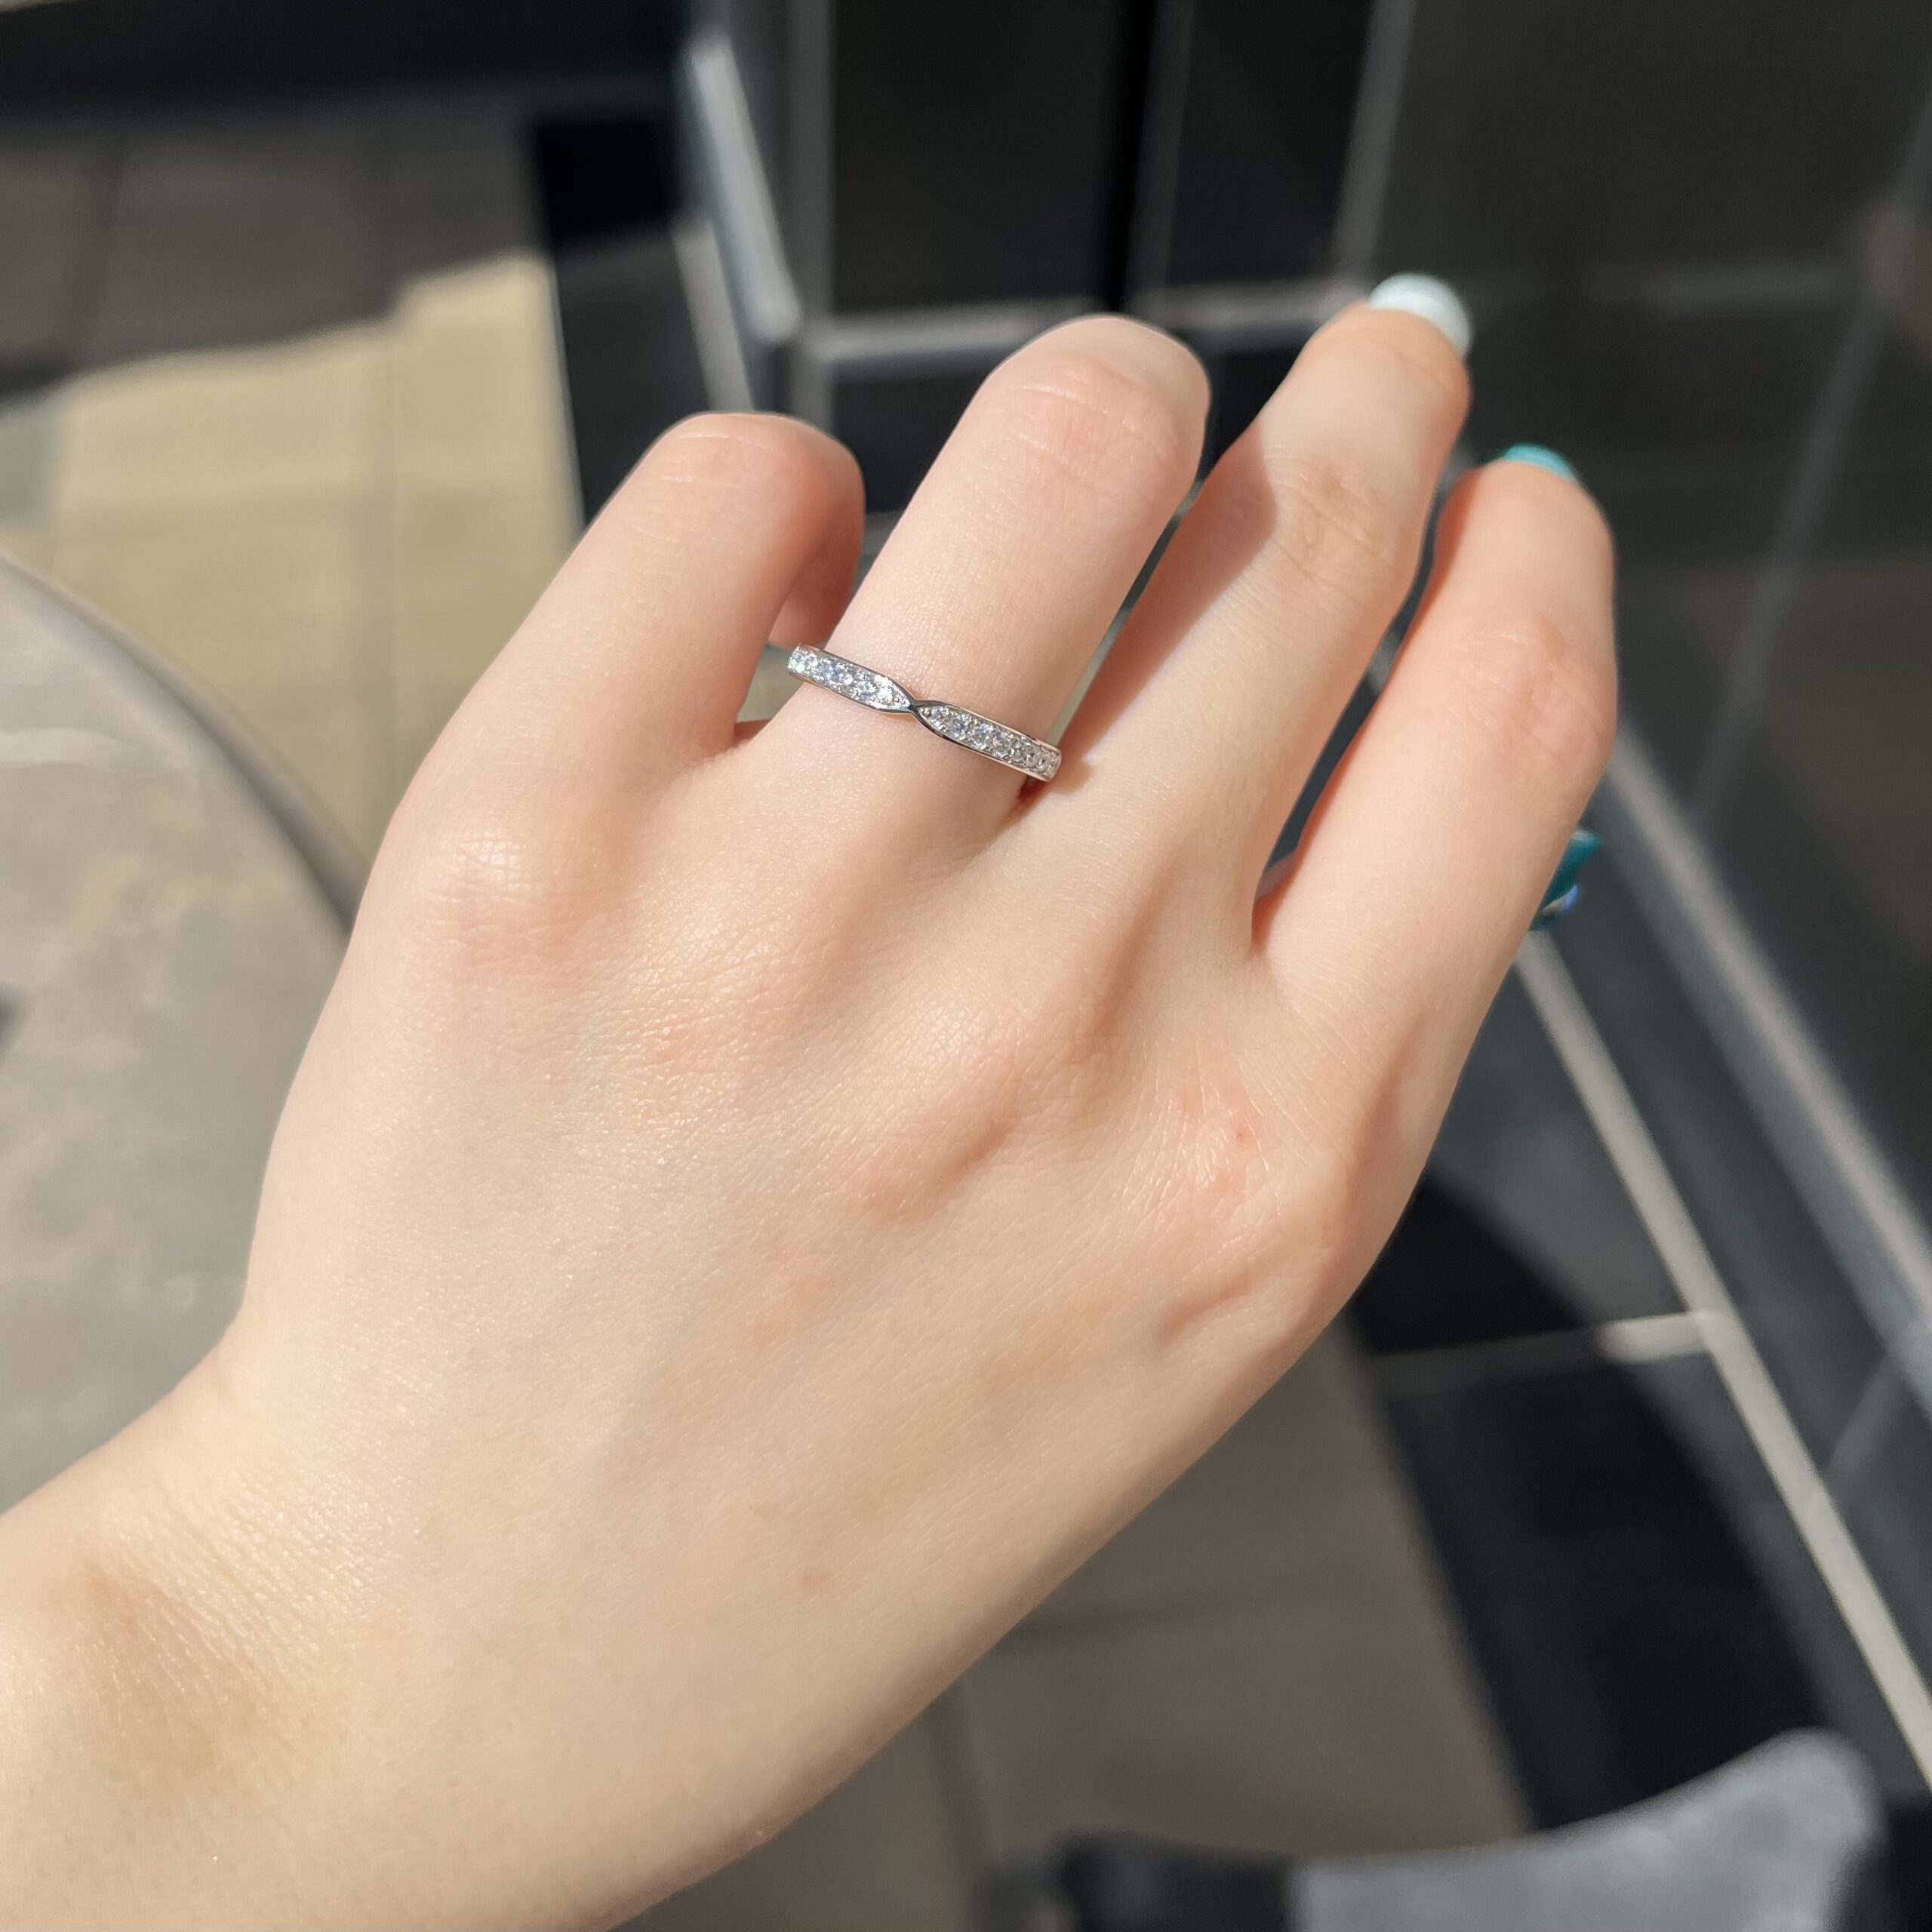 安心堂沼津店公式ブログ 【LAZARE DIAMOND】結婚指輪”WITH -ウィズ-”を